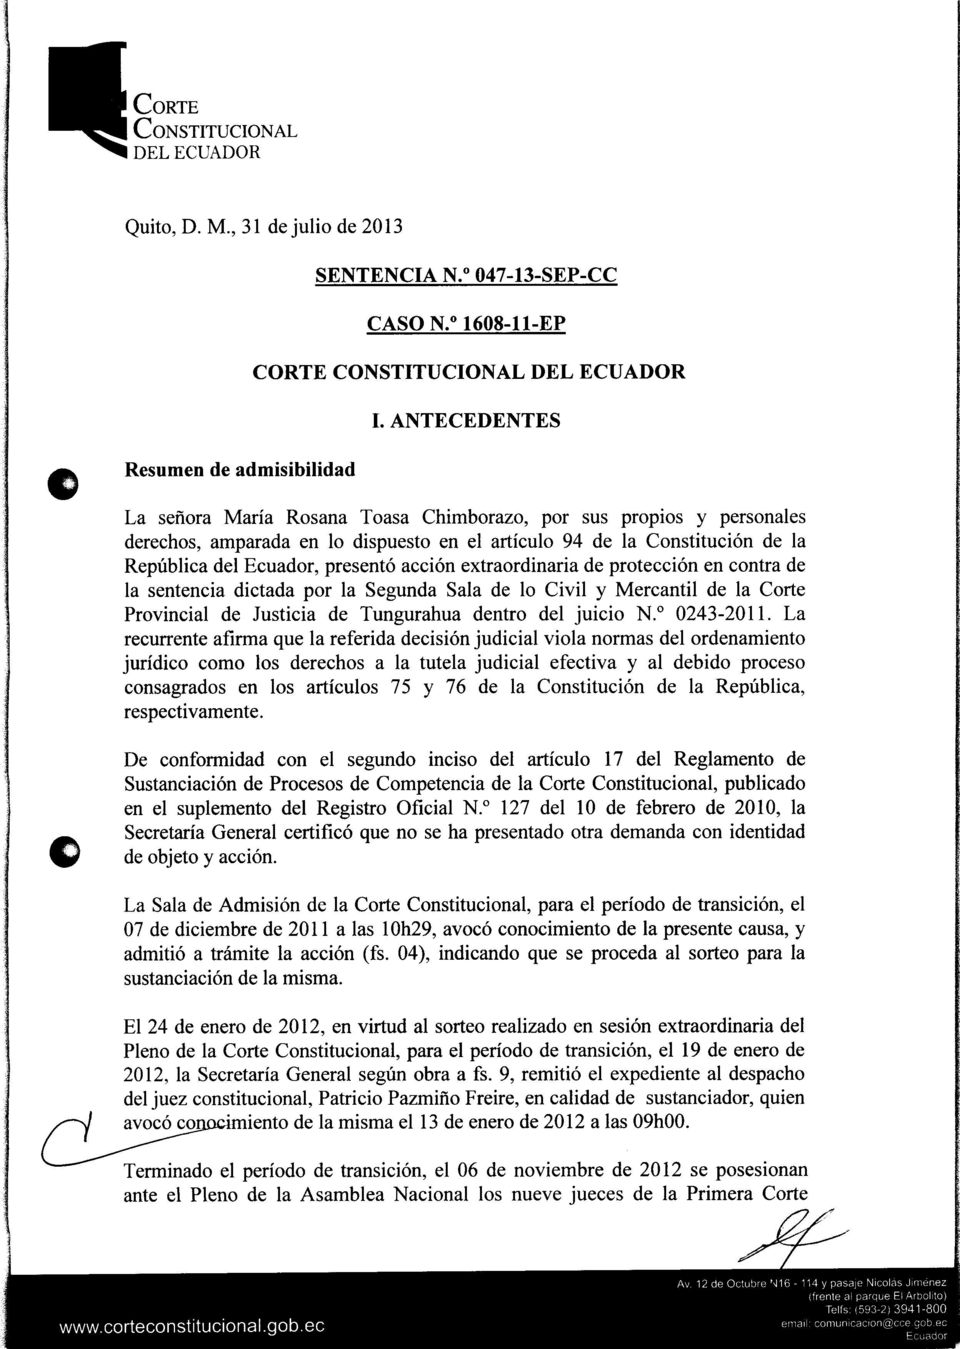 extraordinaria de protección en contra de la sentencia dictada por la Segunda Sala de lo Civil y Mercantil de la Corte Provincial de Justicia de Tungurahua dentro del juicio N. 0 0243-2011.